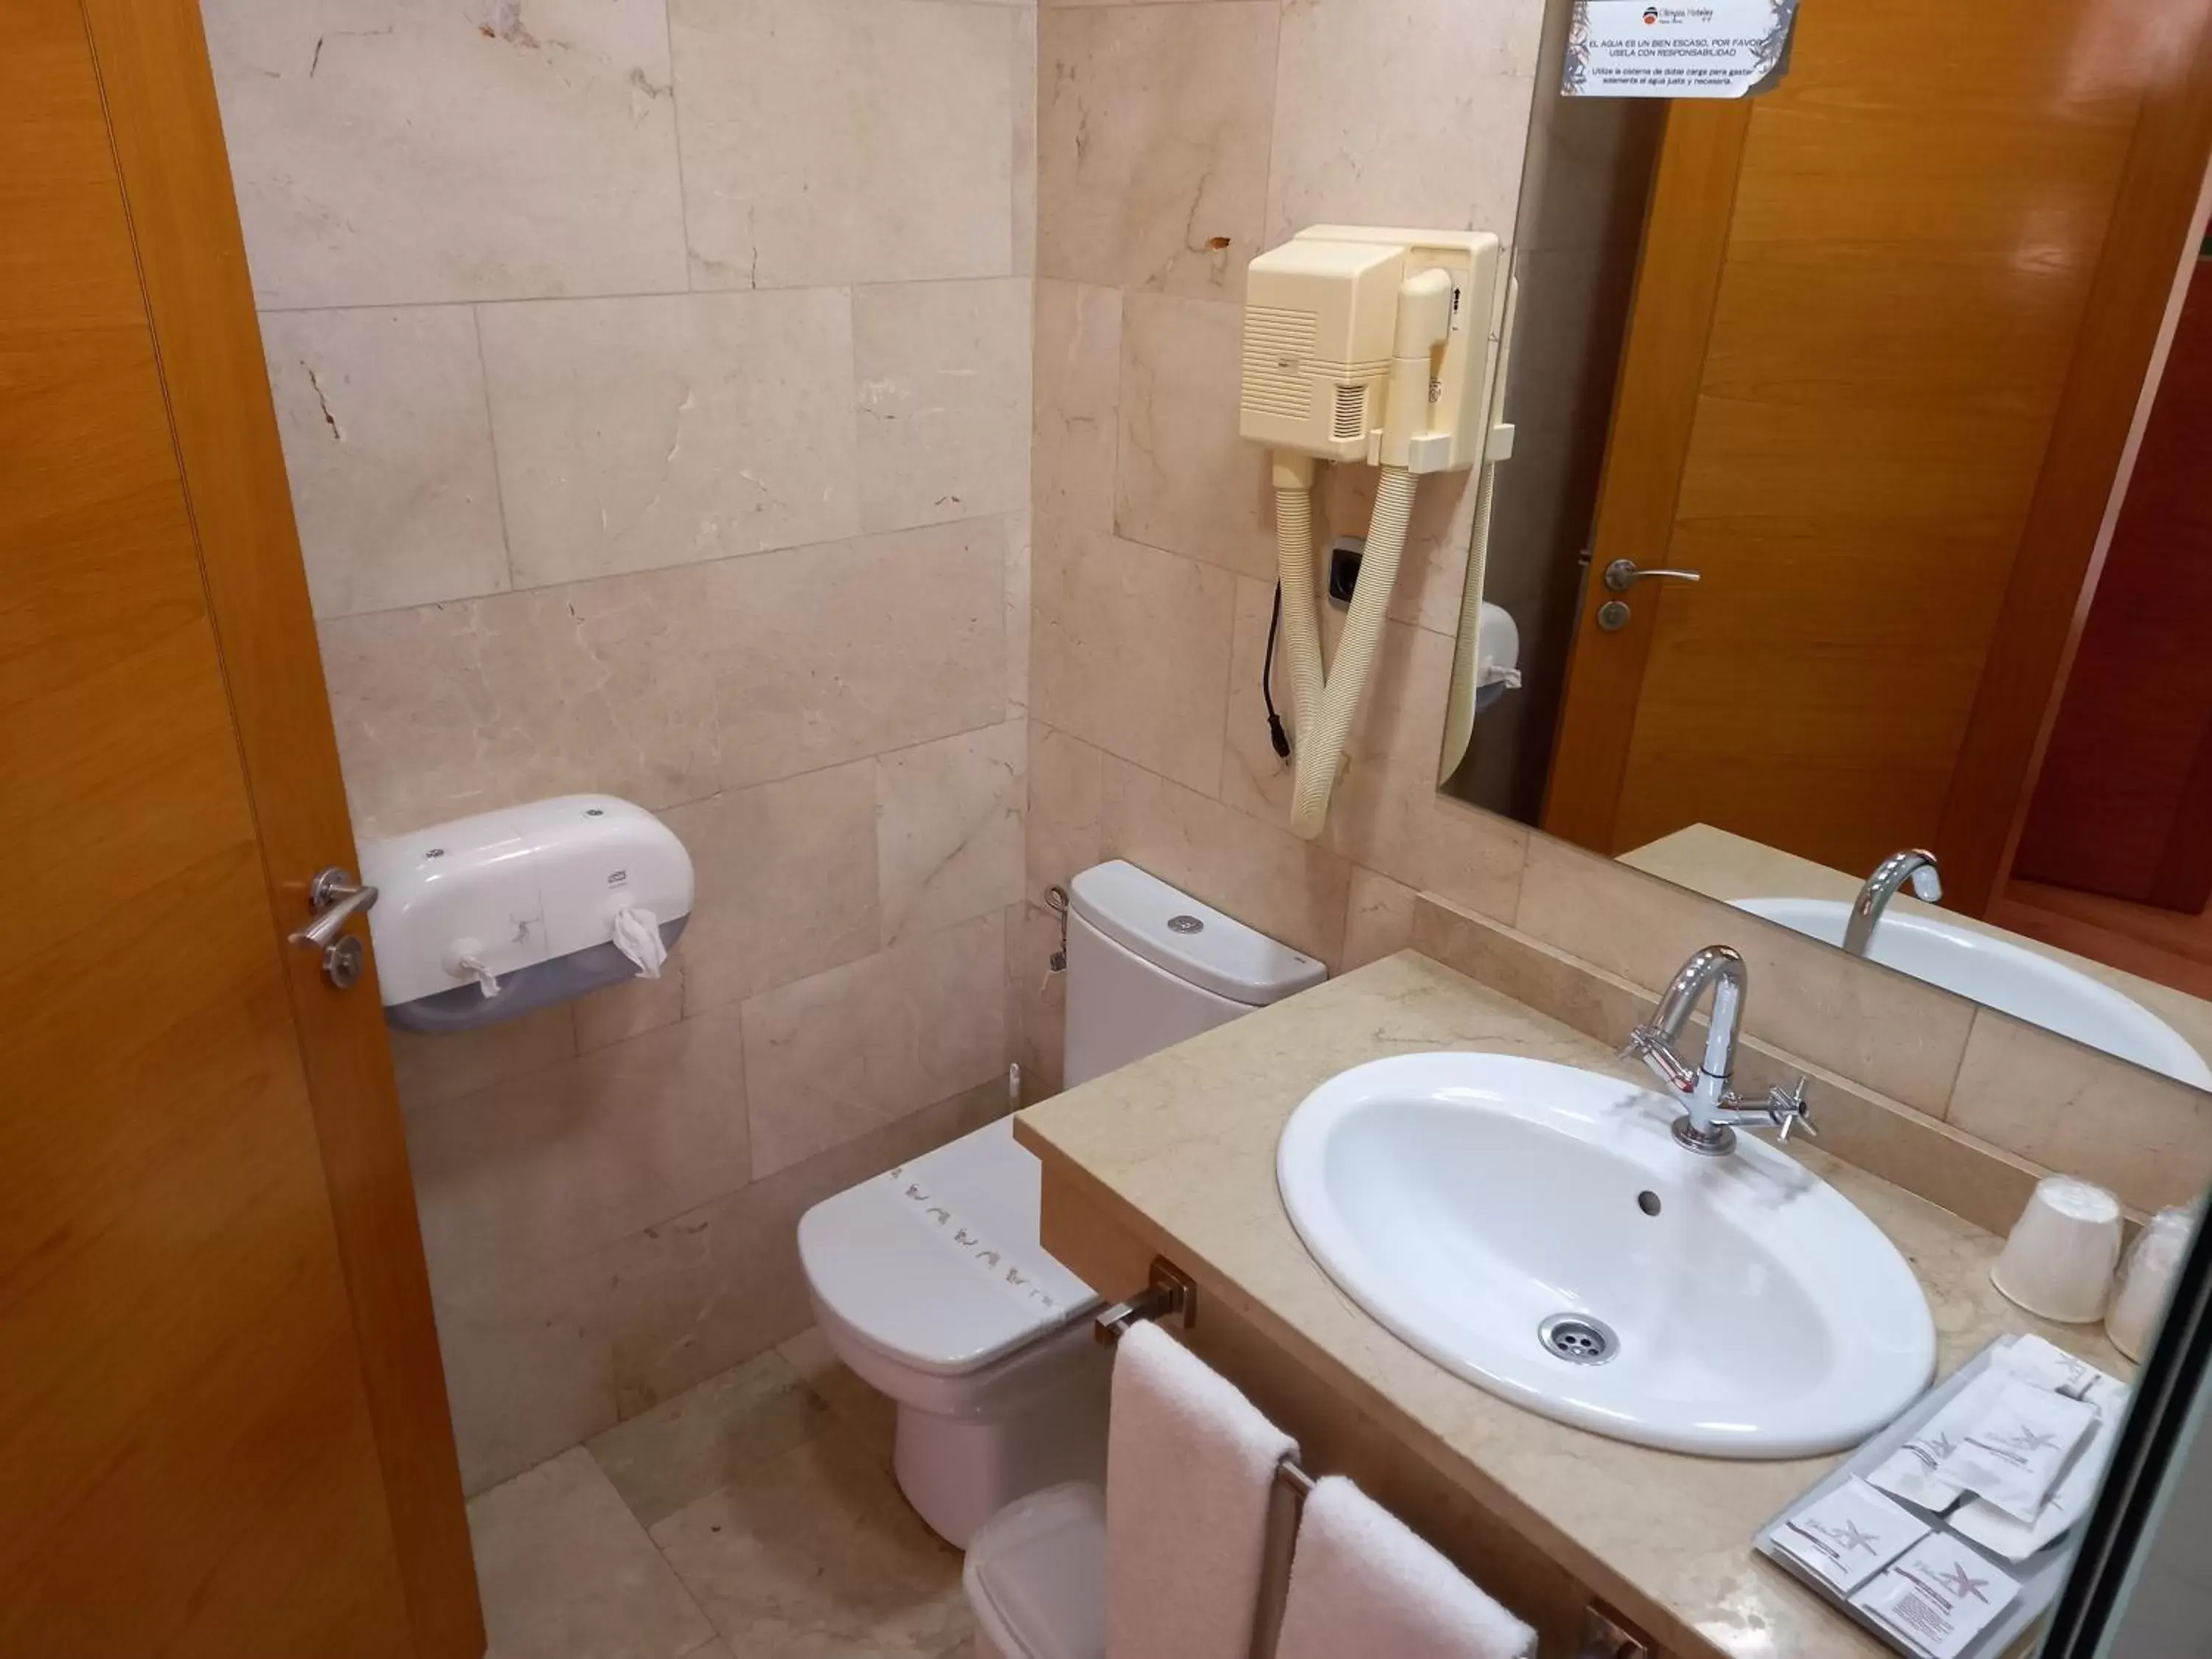 Bathroom in Olimpia Hoteles